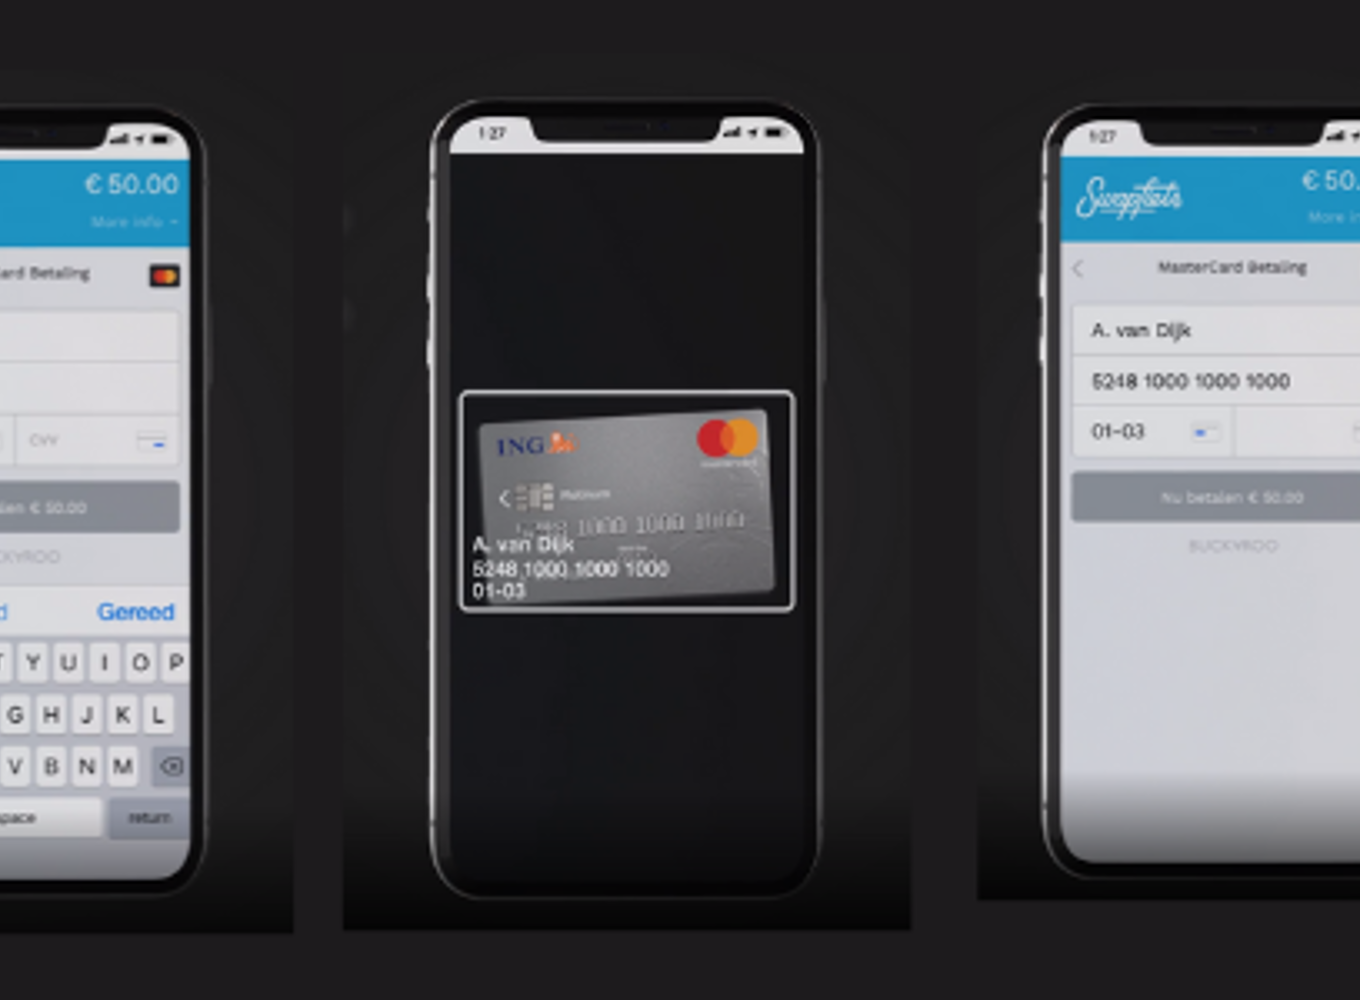 Betaal je met een iPhone via de Buckaro Smart Checkout? Dan kun je creditcard gewoon met de camera van je iPhone scannen, de gegevens worden automatisch ingelezen.